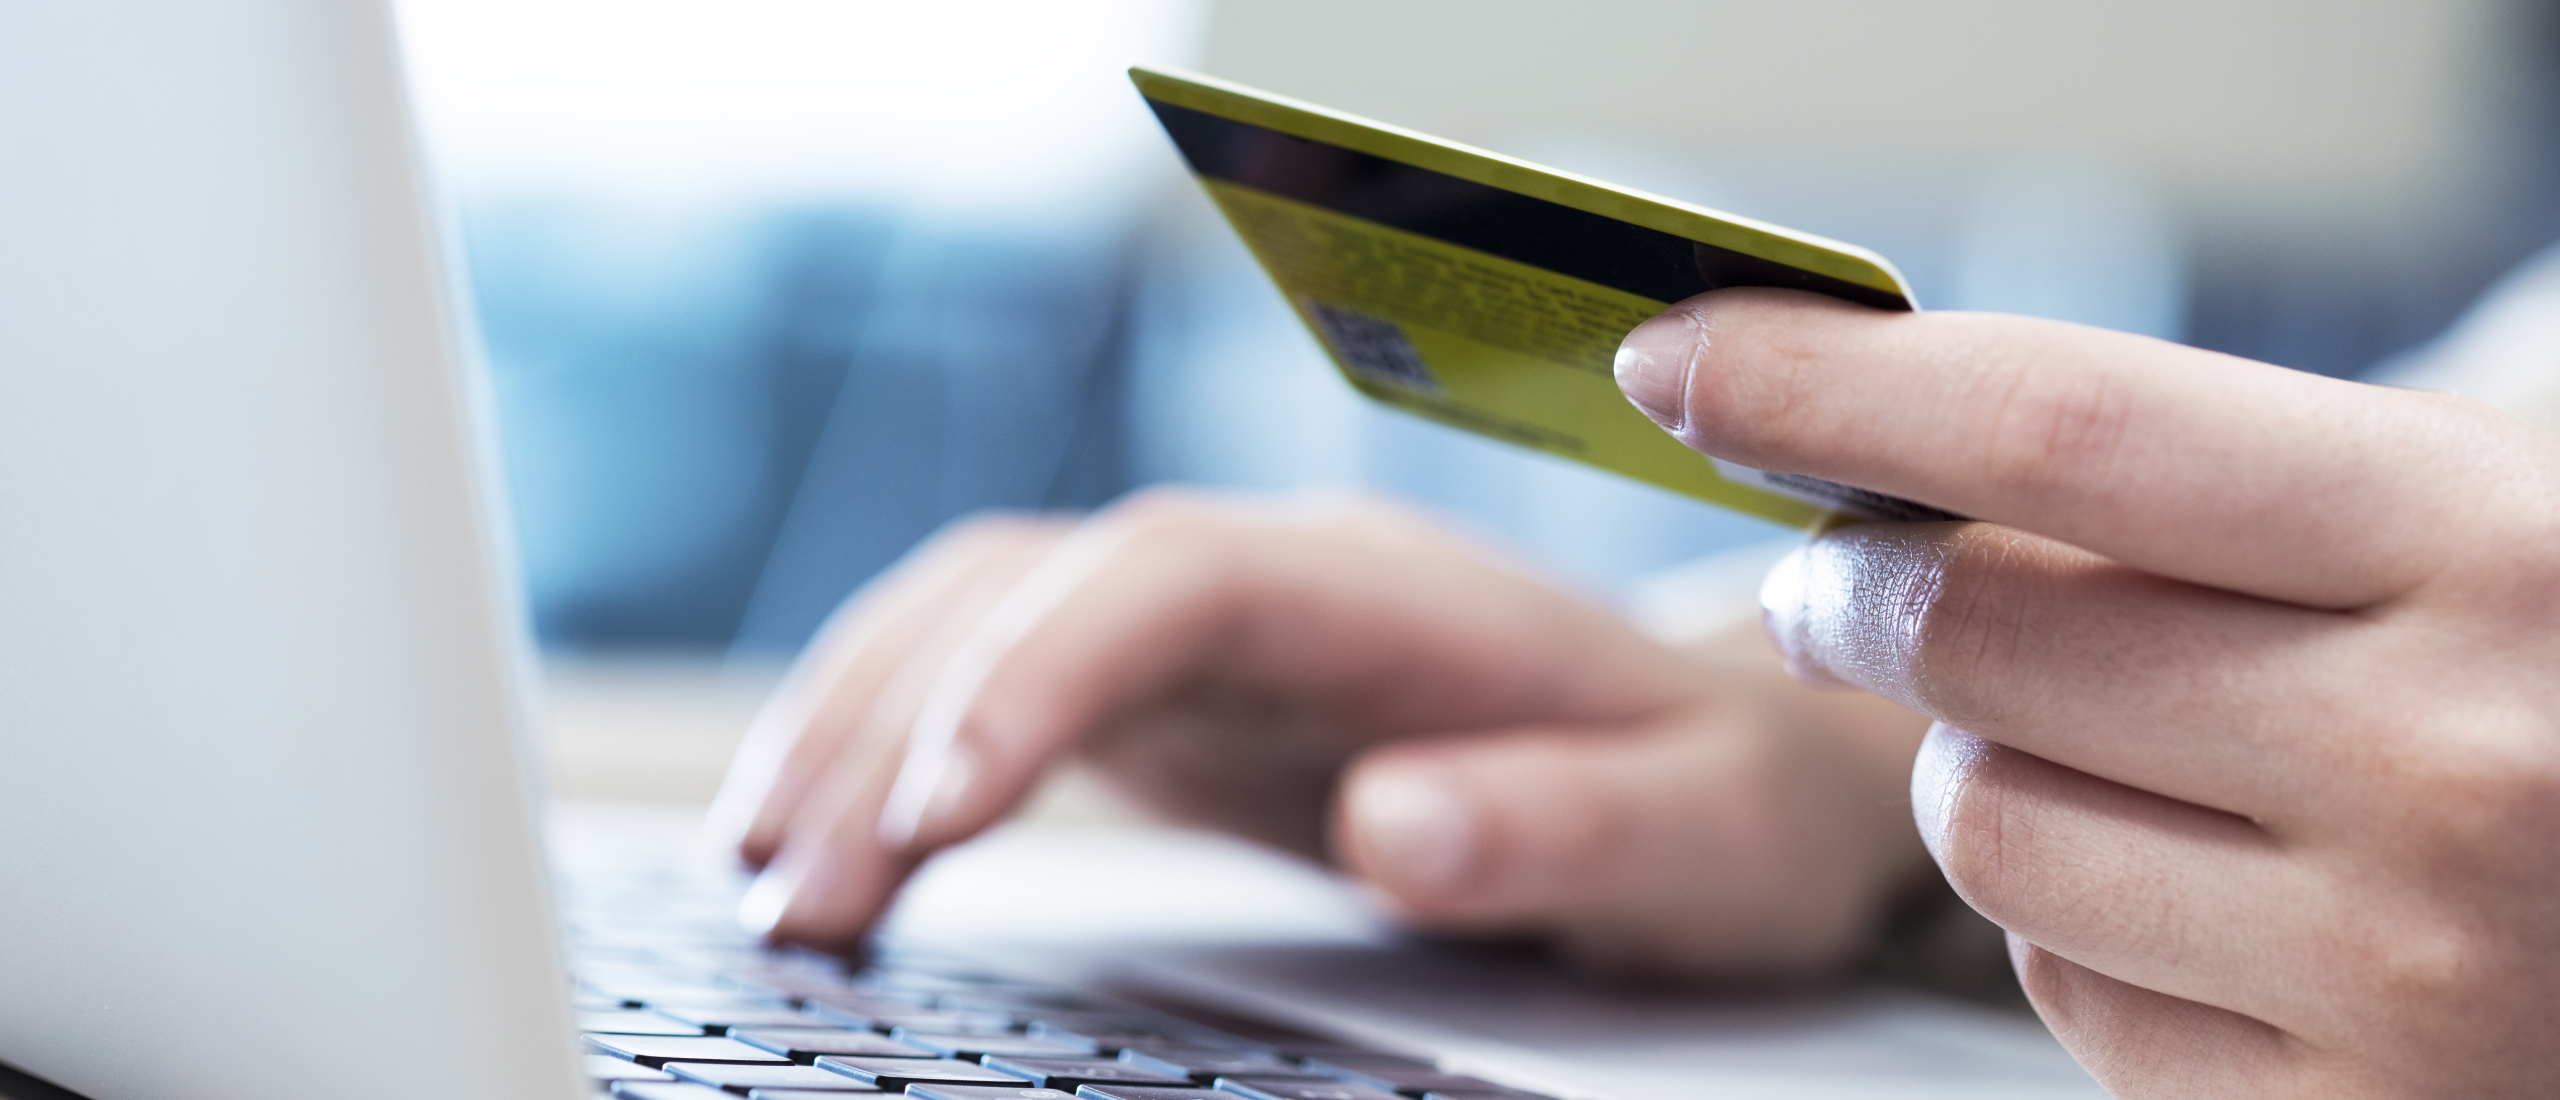 Is een zakelijke debitcard de perfecte oplossing voor ondernemers?